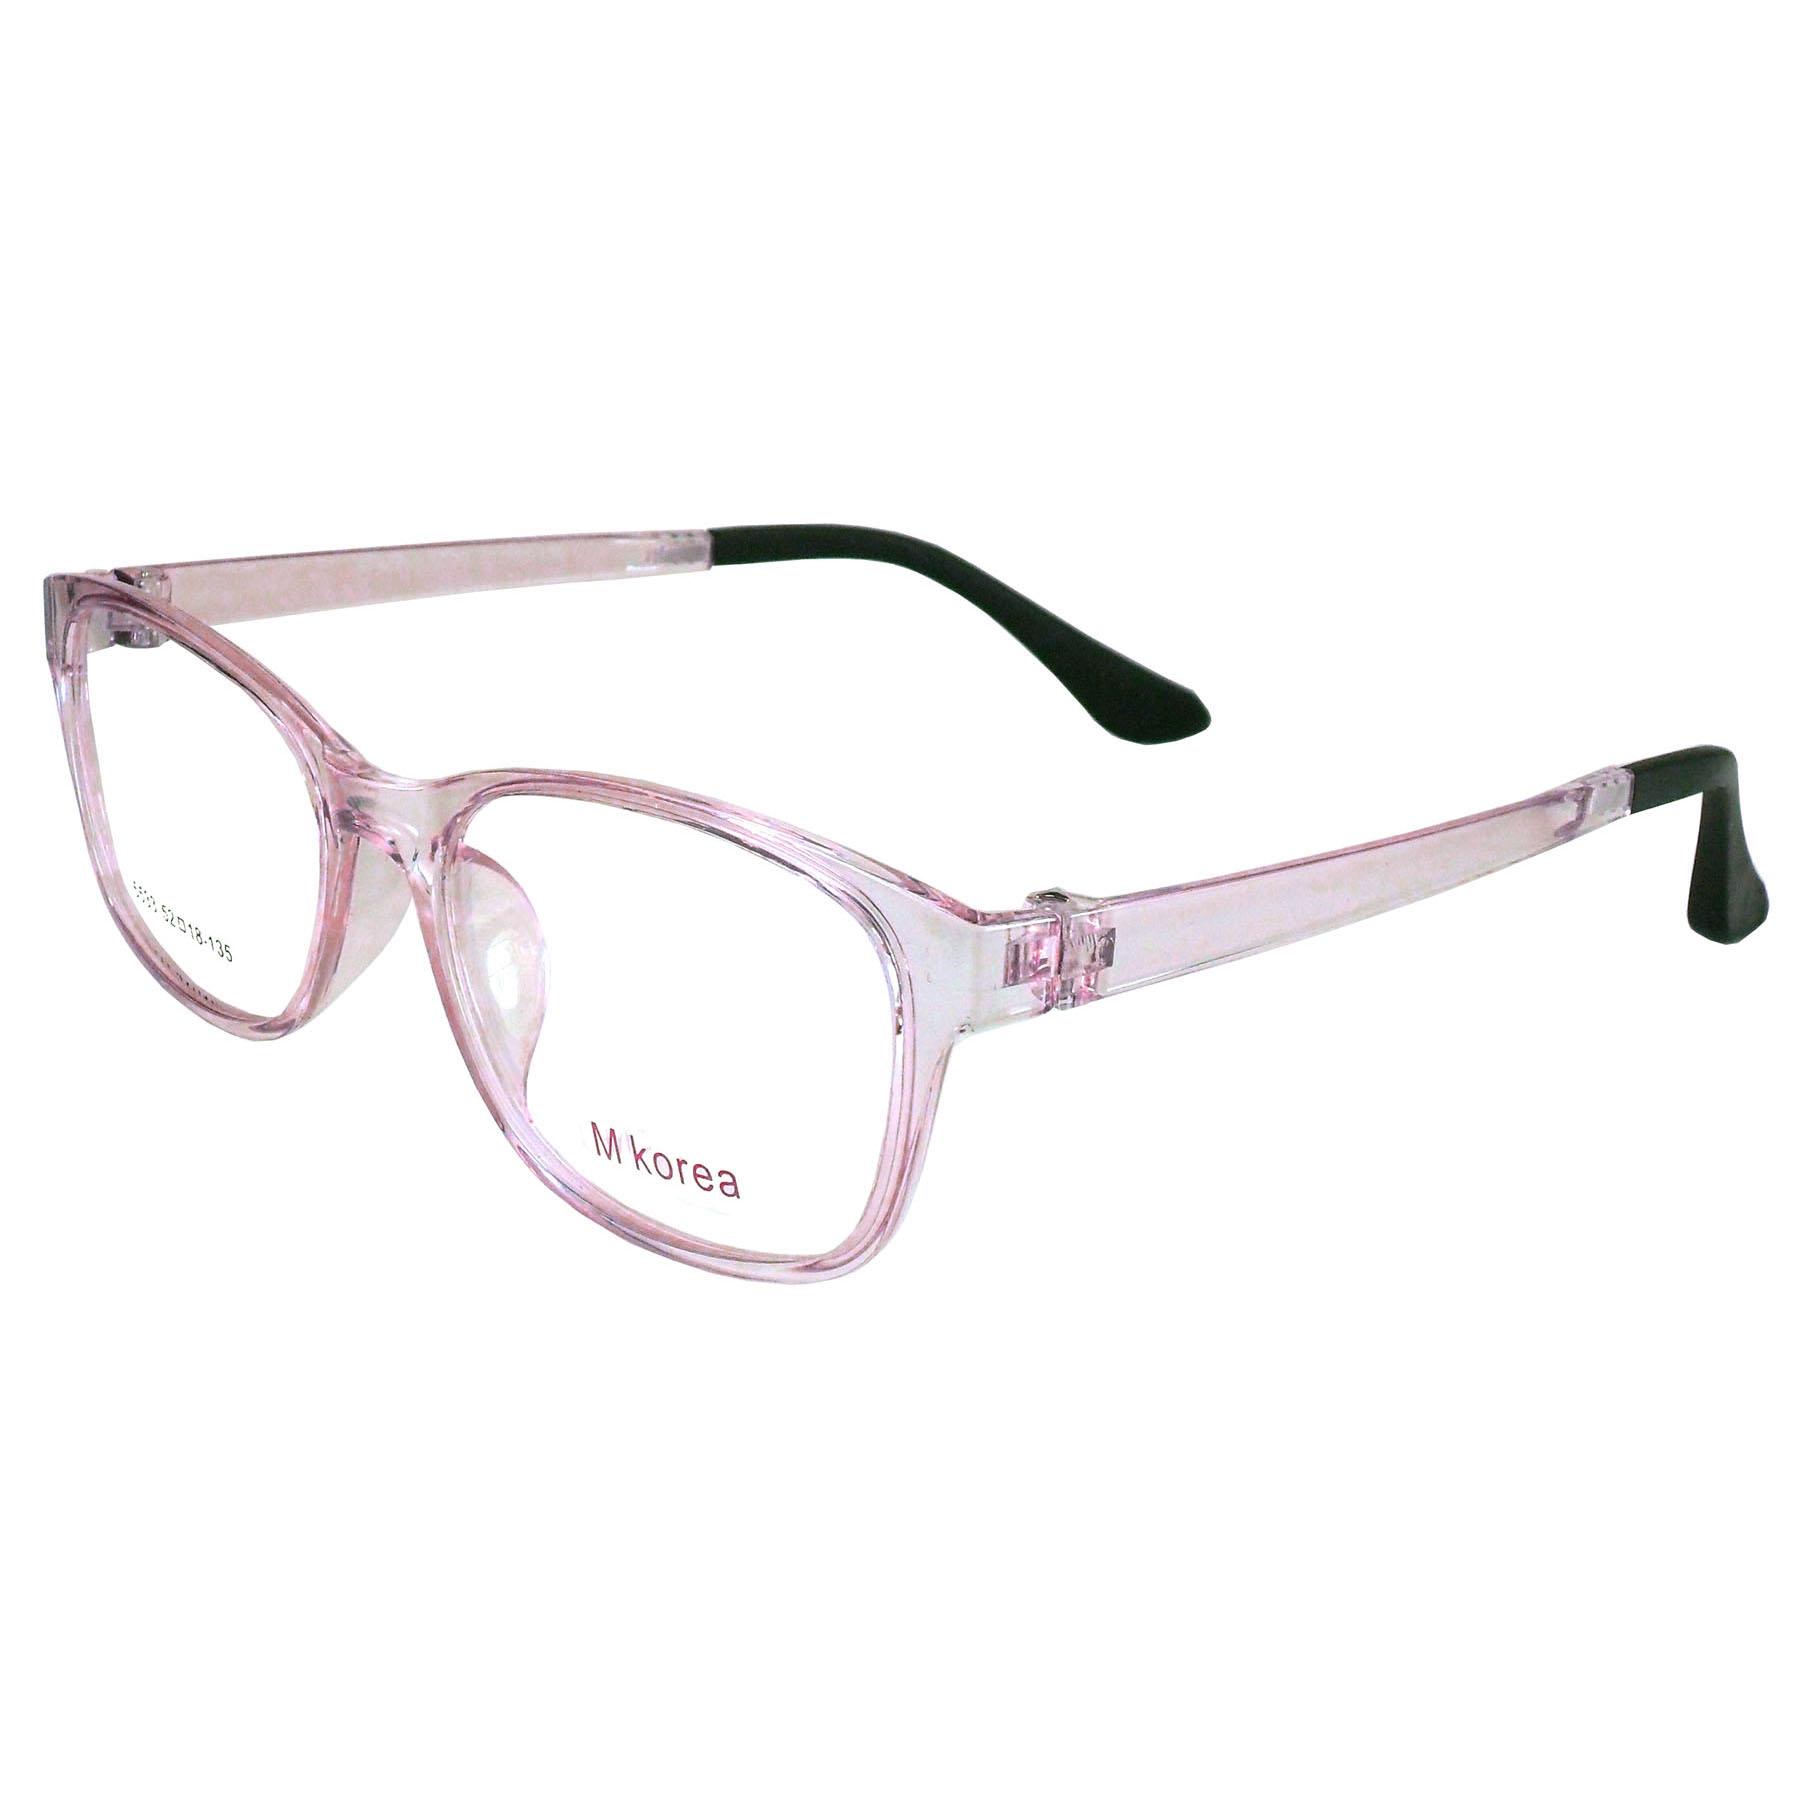 M Korea แว่นตา รุ่น 5533 ทรงสปอร์ต วัสดุ TR-90 เบาและยืดหยุนได้สูง ขาข้อต่อ ( สำหรับตัดเลนส์ ) กรอบแว่นตา แว่นสายตา แฟชั่น EyewearTop Glasses